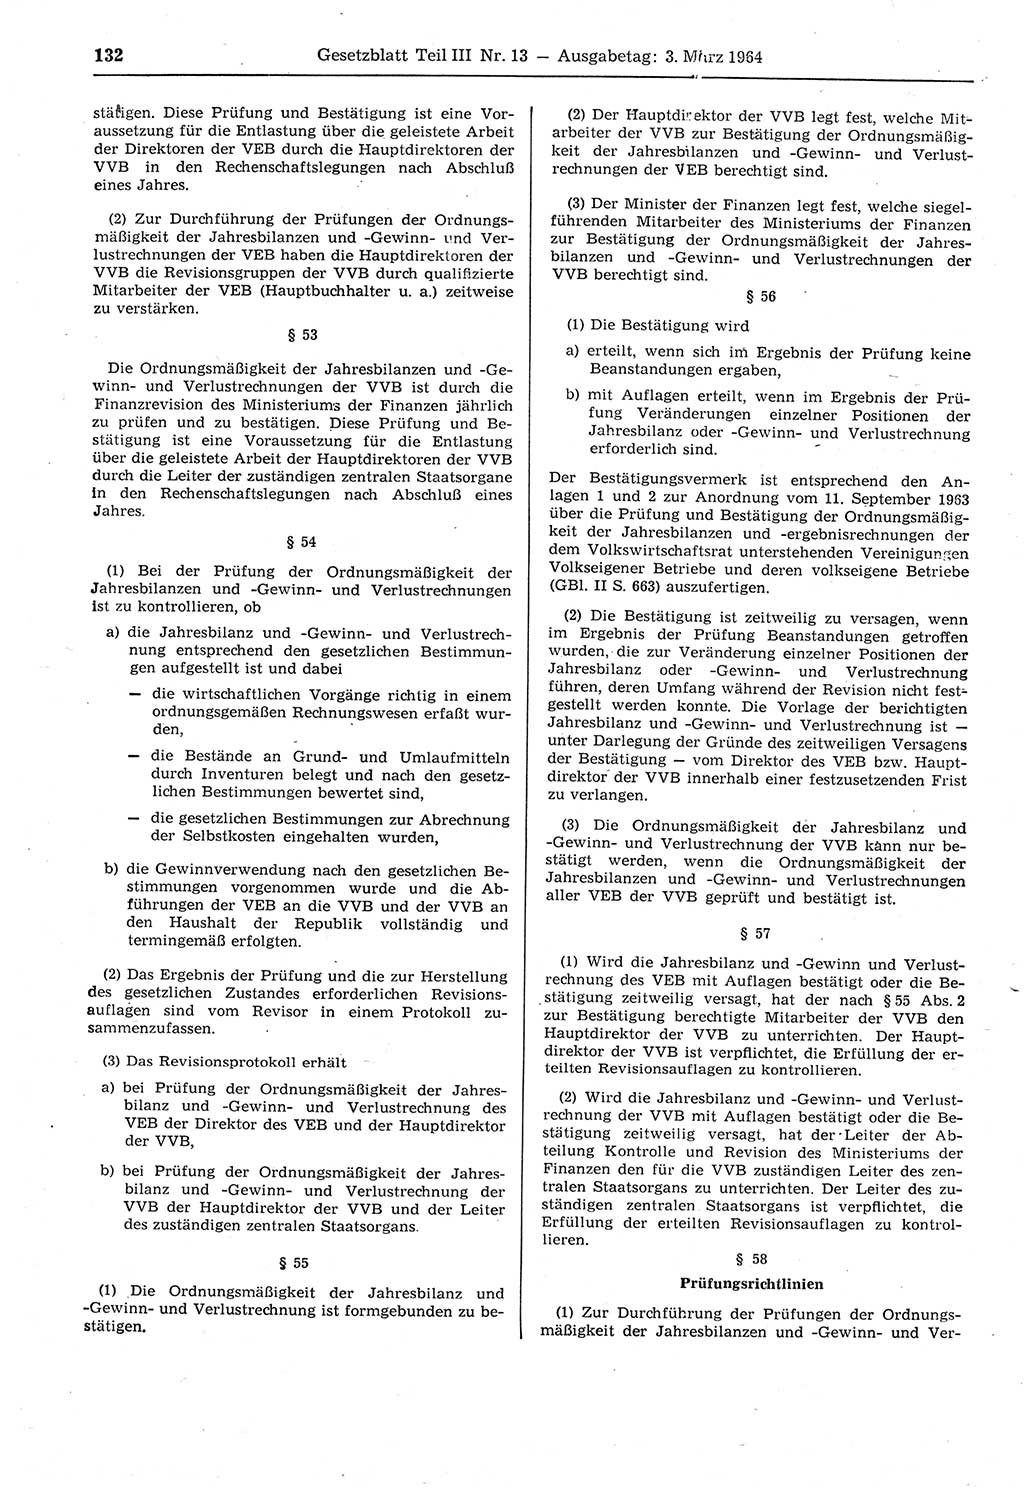 Gesetzblatt (GBl.) der Deutschen Demokratischen Republik (DDR) Teil ⅠⅠⅠ 1964, Seite 132 (GBl. DDR ⅠⅠⅠ 1964, S. 132)